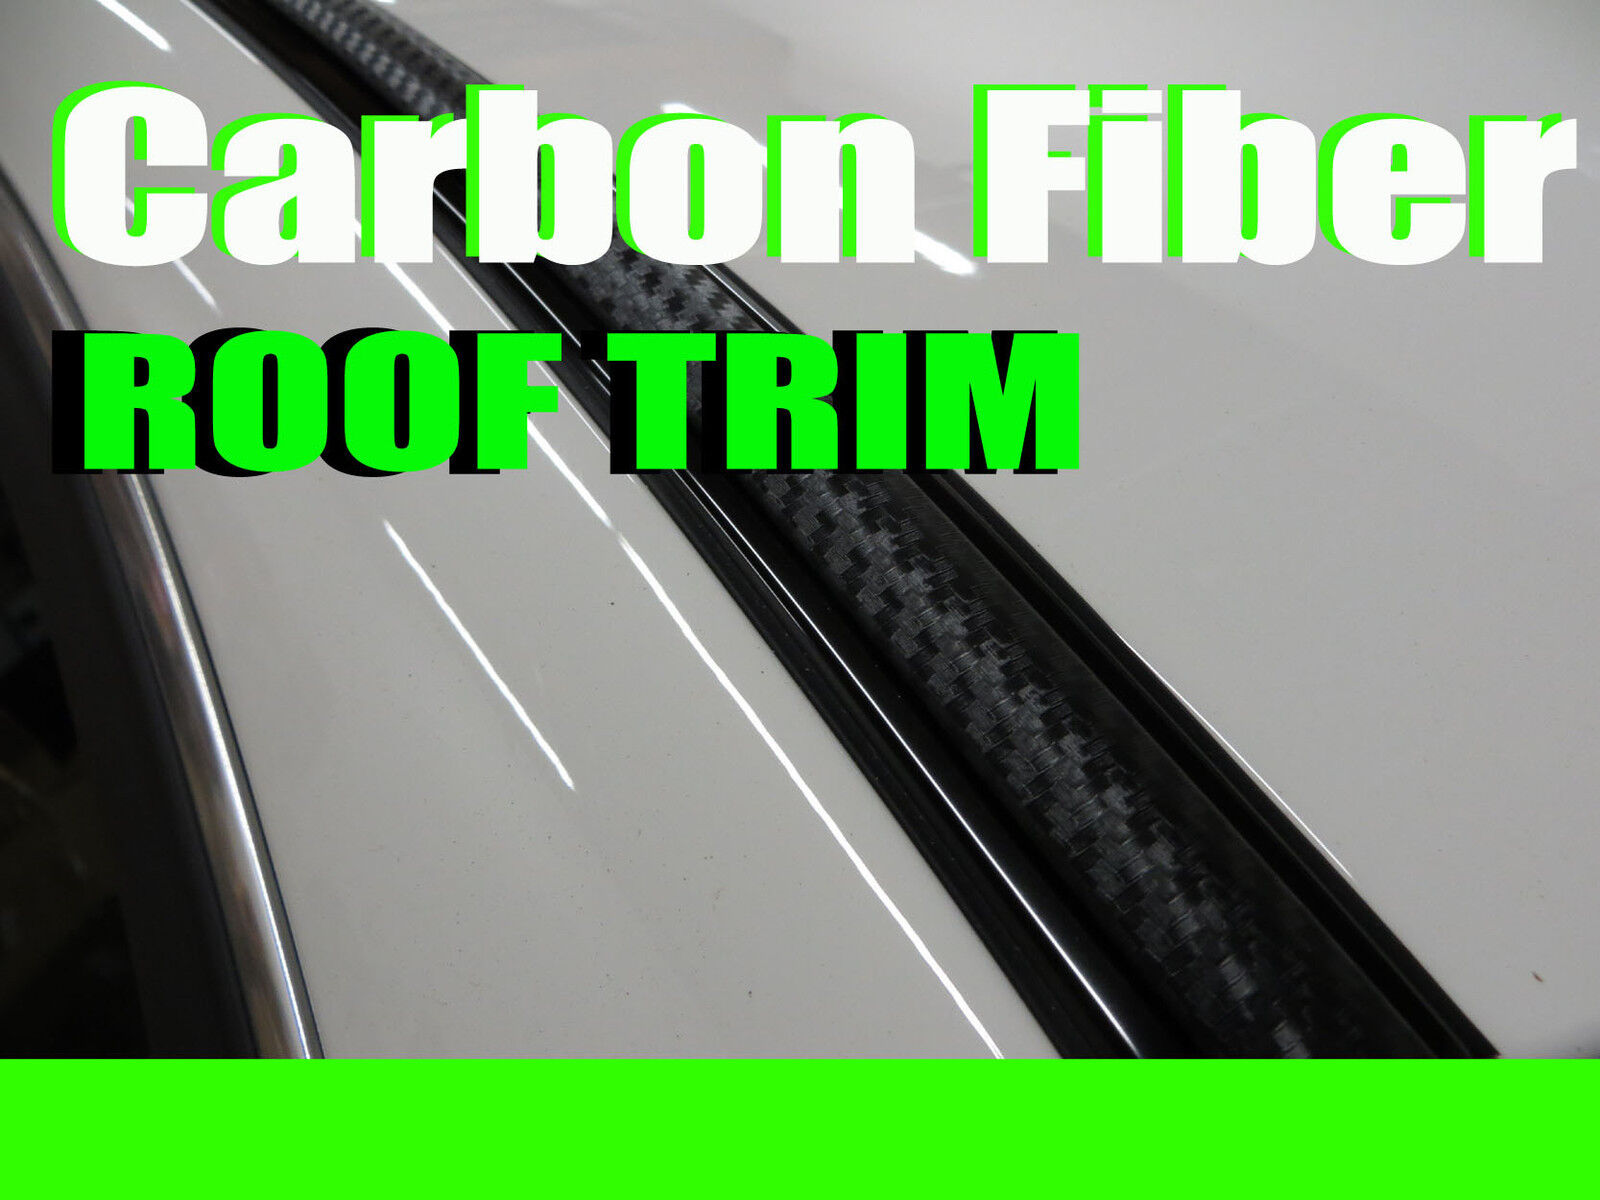 FOR INFIN2001-2018 2pcs 3D BLACK CARBON FIBER ROOF TOP TRIM MOLDING DIY